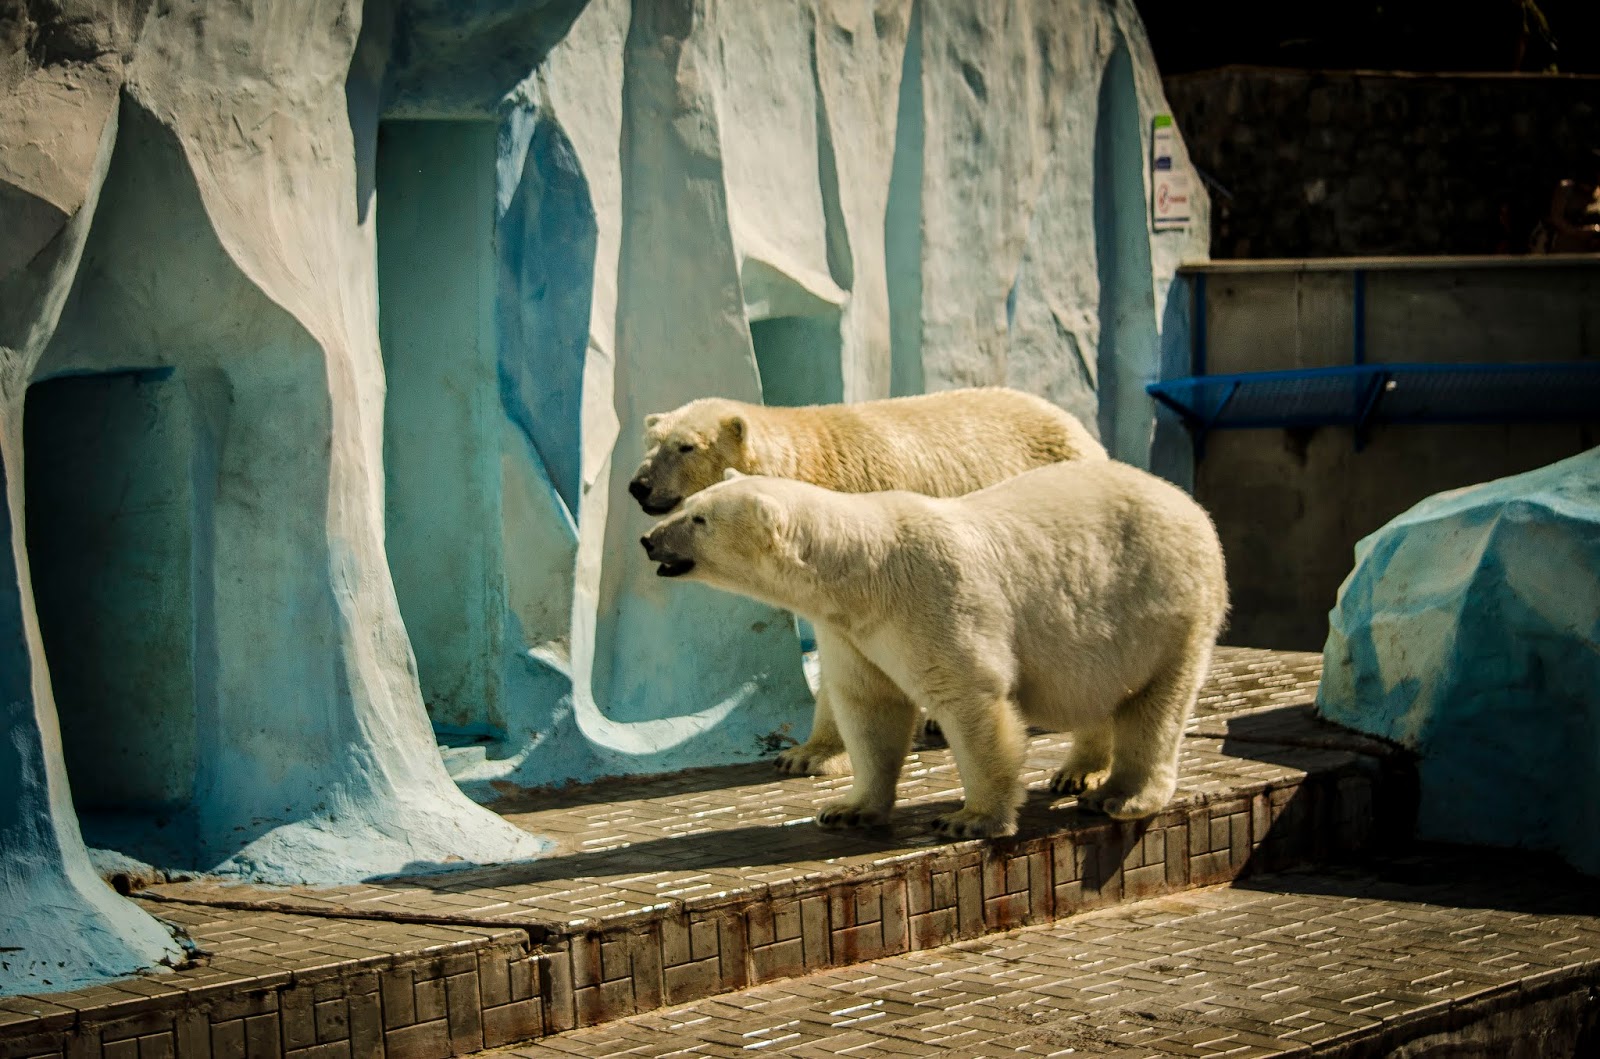 Зоопарк города новосибирск